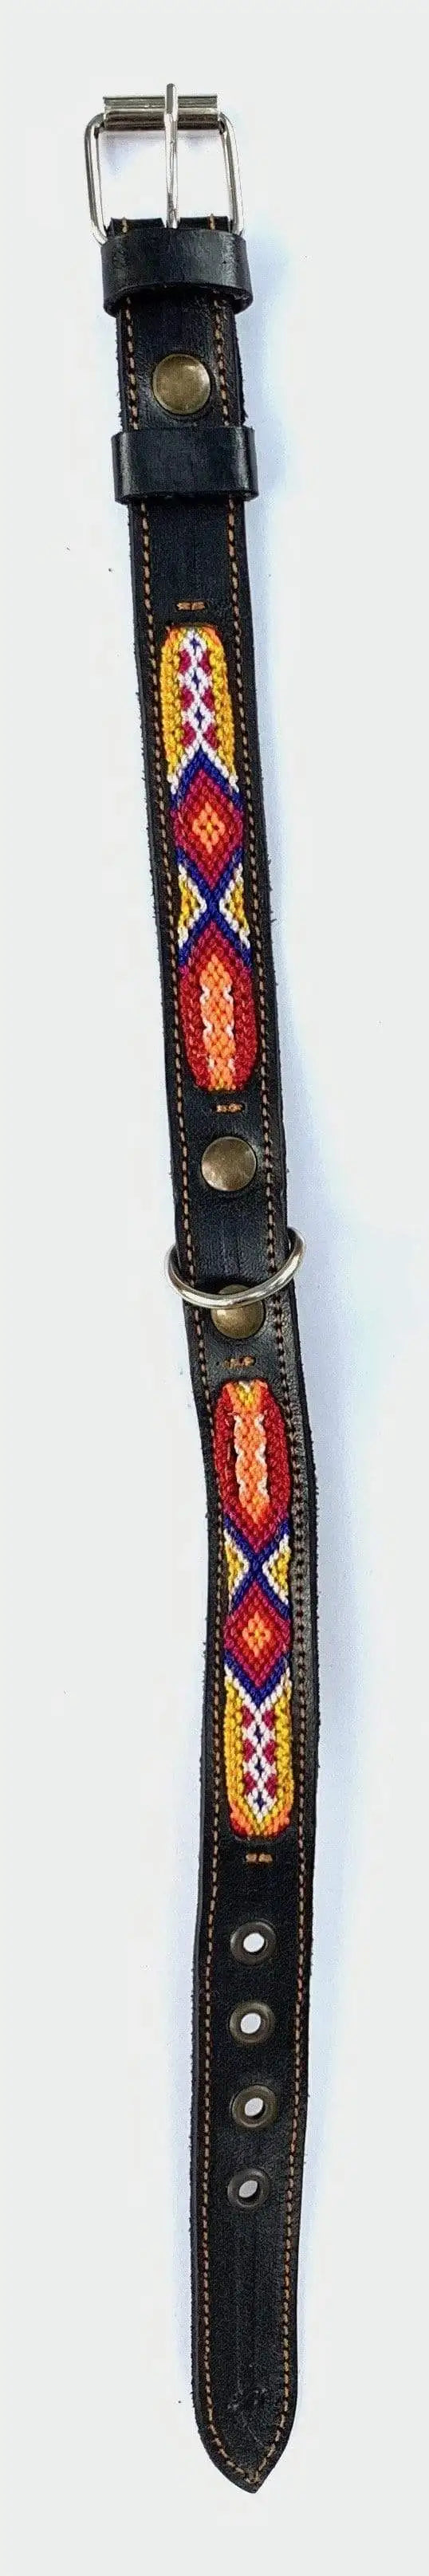 Double Detail Artisanal Handmade Dog Collars - 12